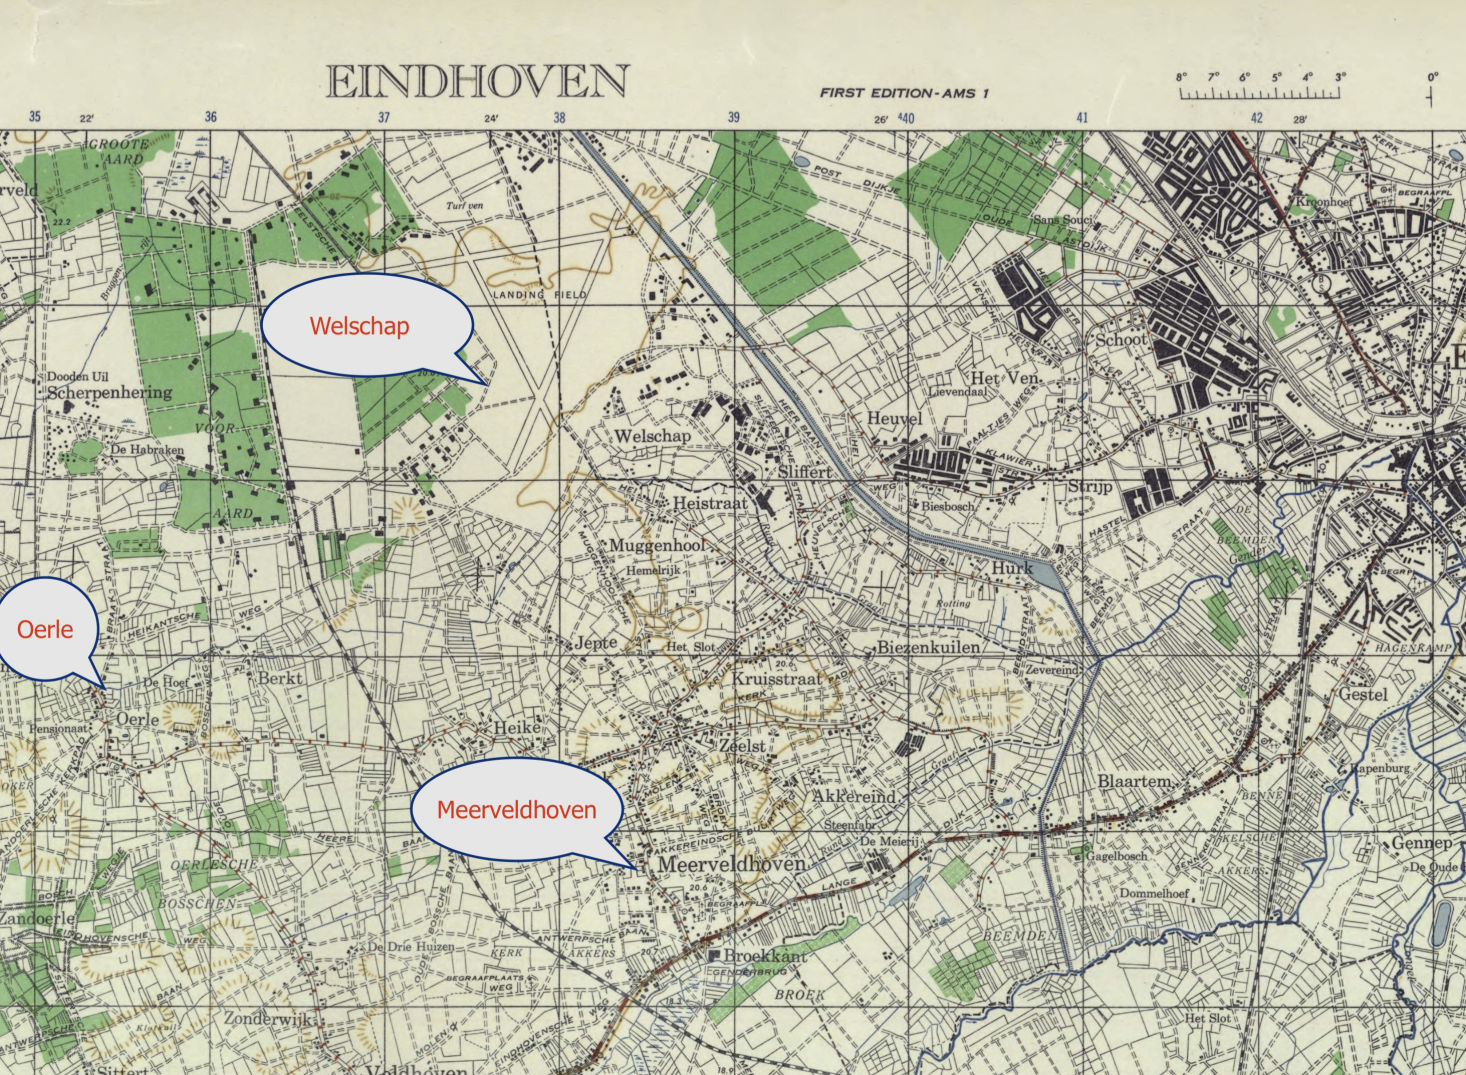 Stafkaart eindhoven 1944